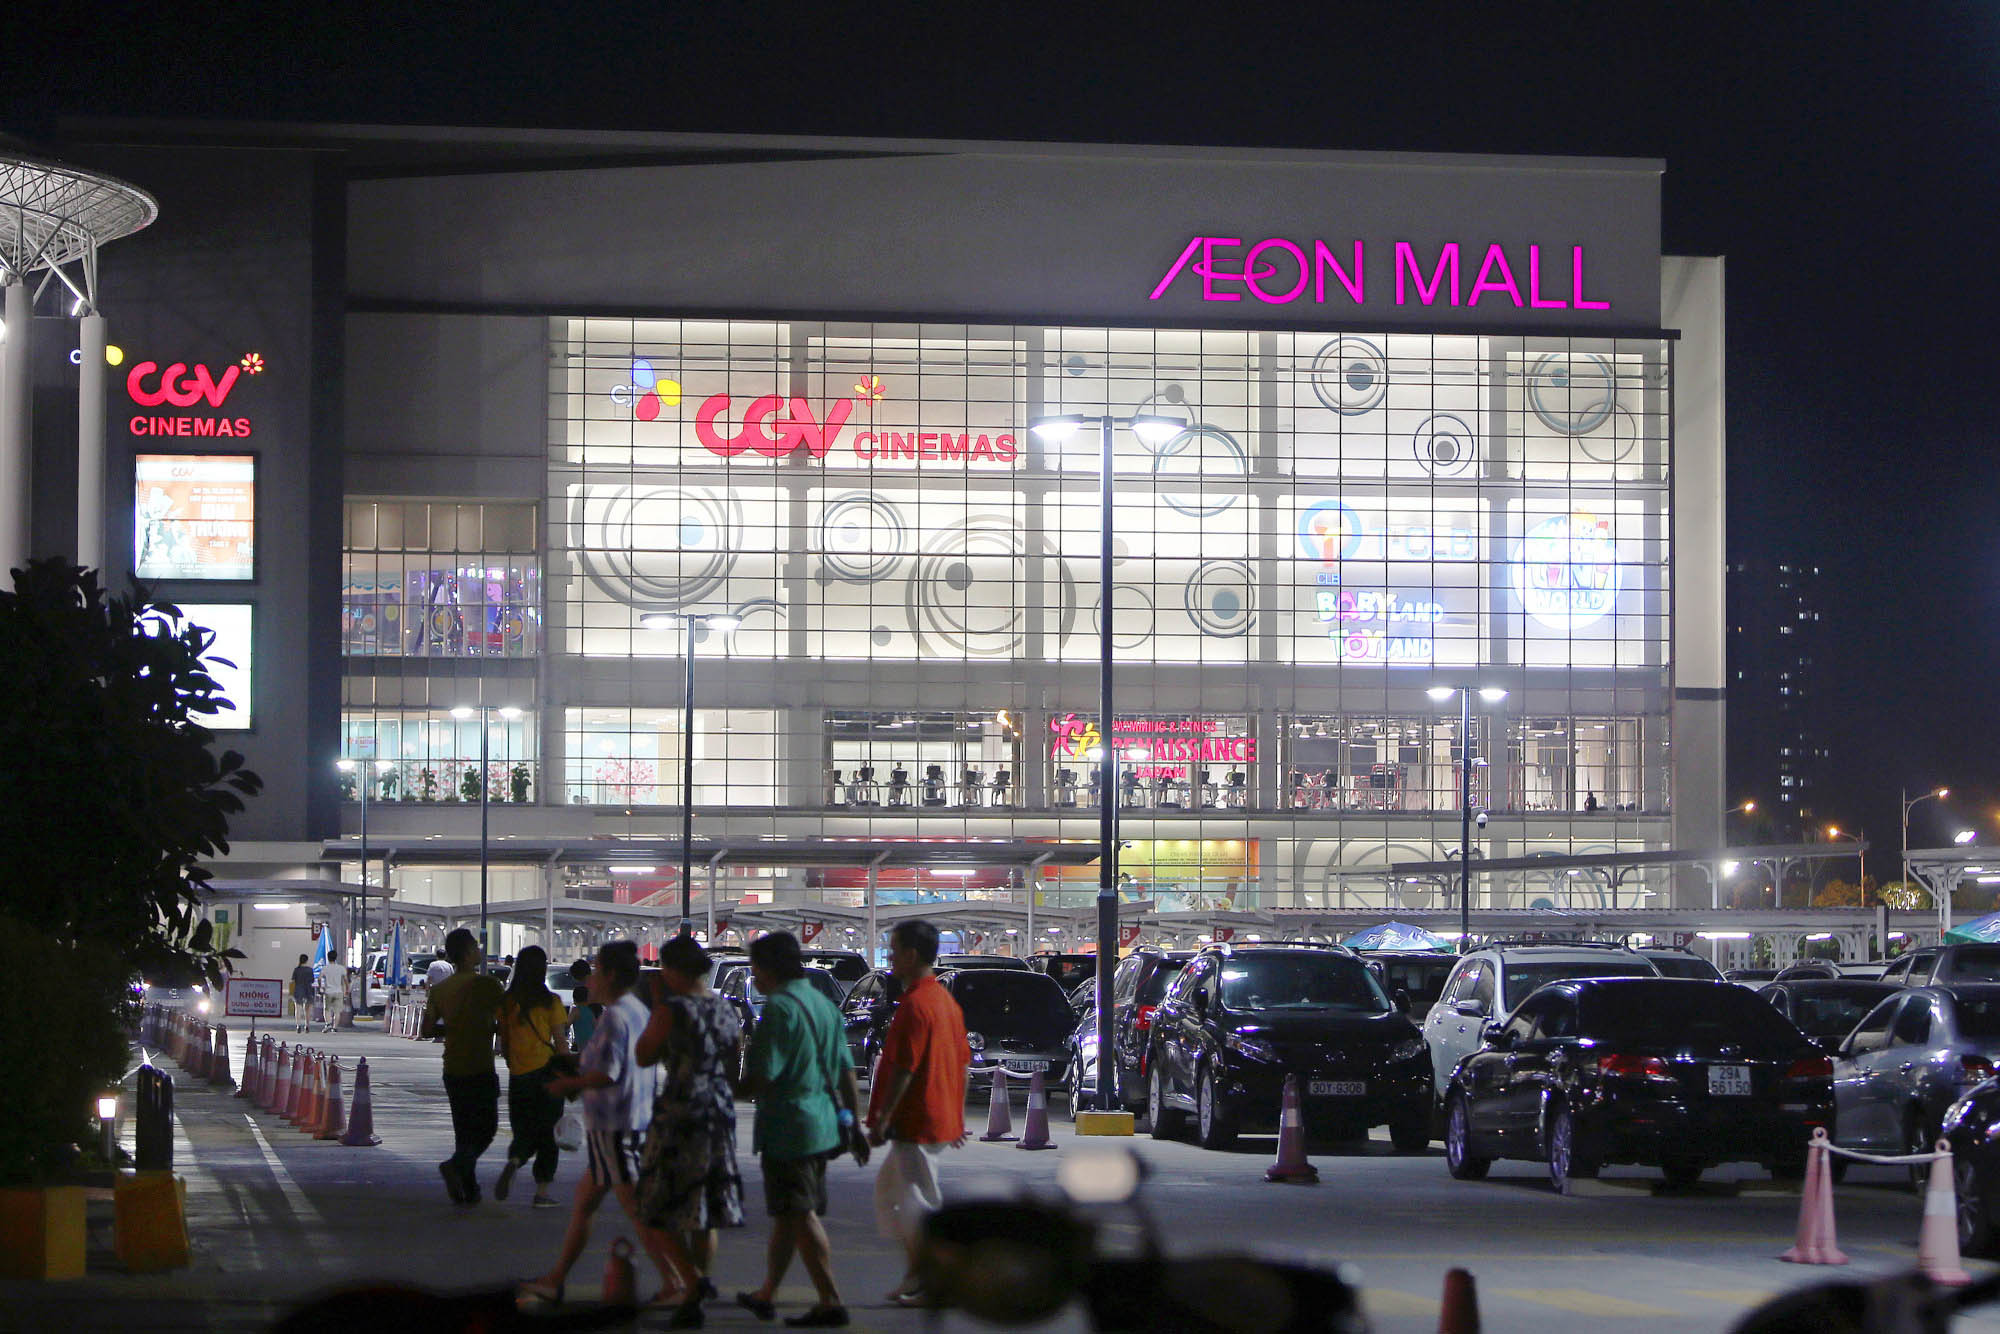 AEON Mall in Hanoi, Vietnam.
